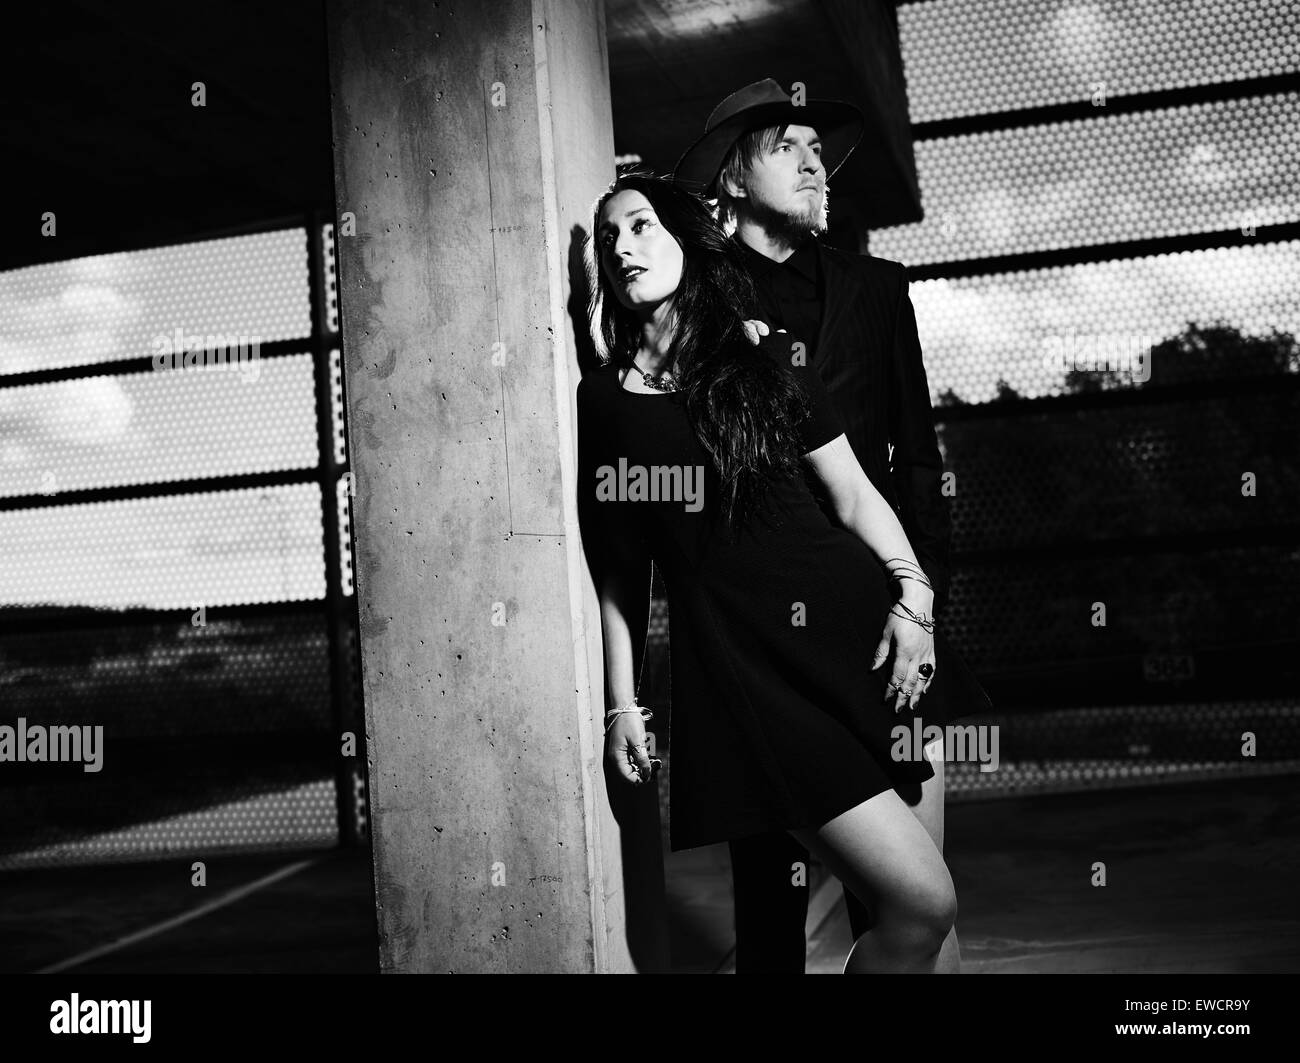 Mann und Frau zusammen, konkrete Gebäude Umgebung, schwarz / weiß Bild Stockfoto